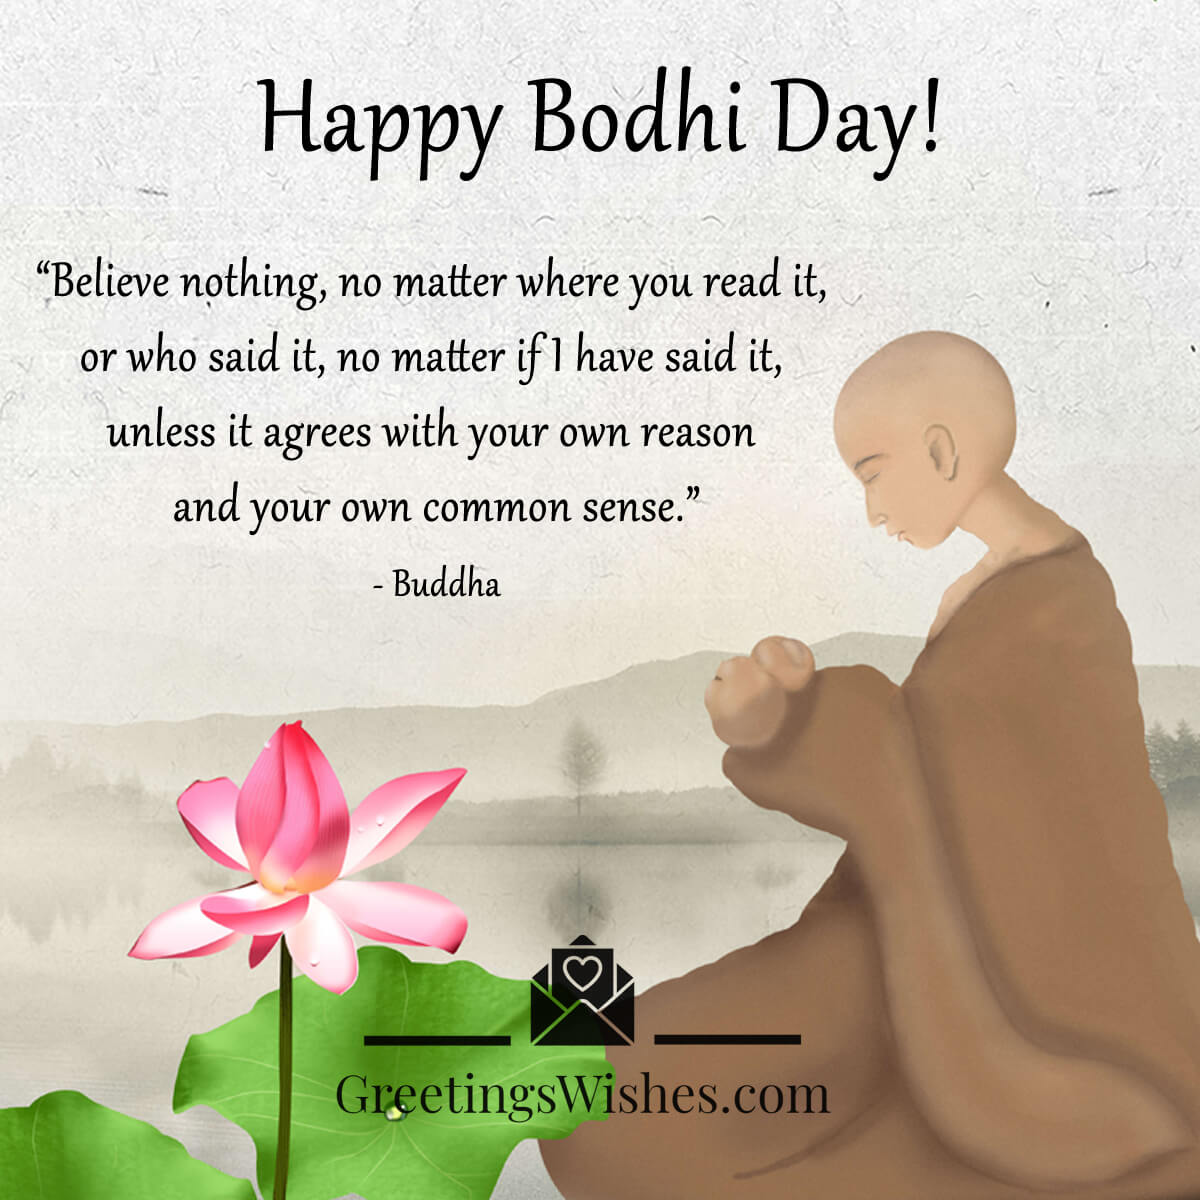 Bodhi Day Buddha Quote